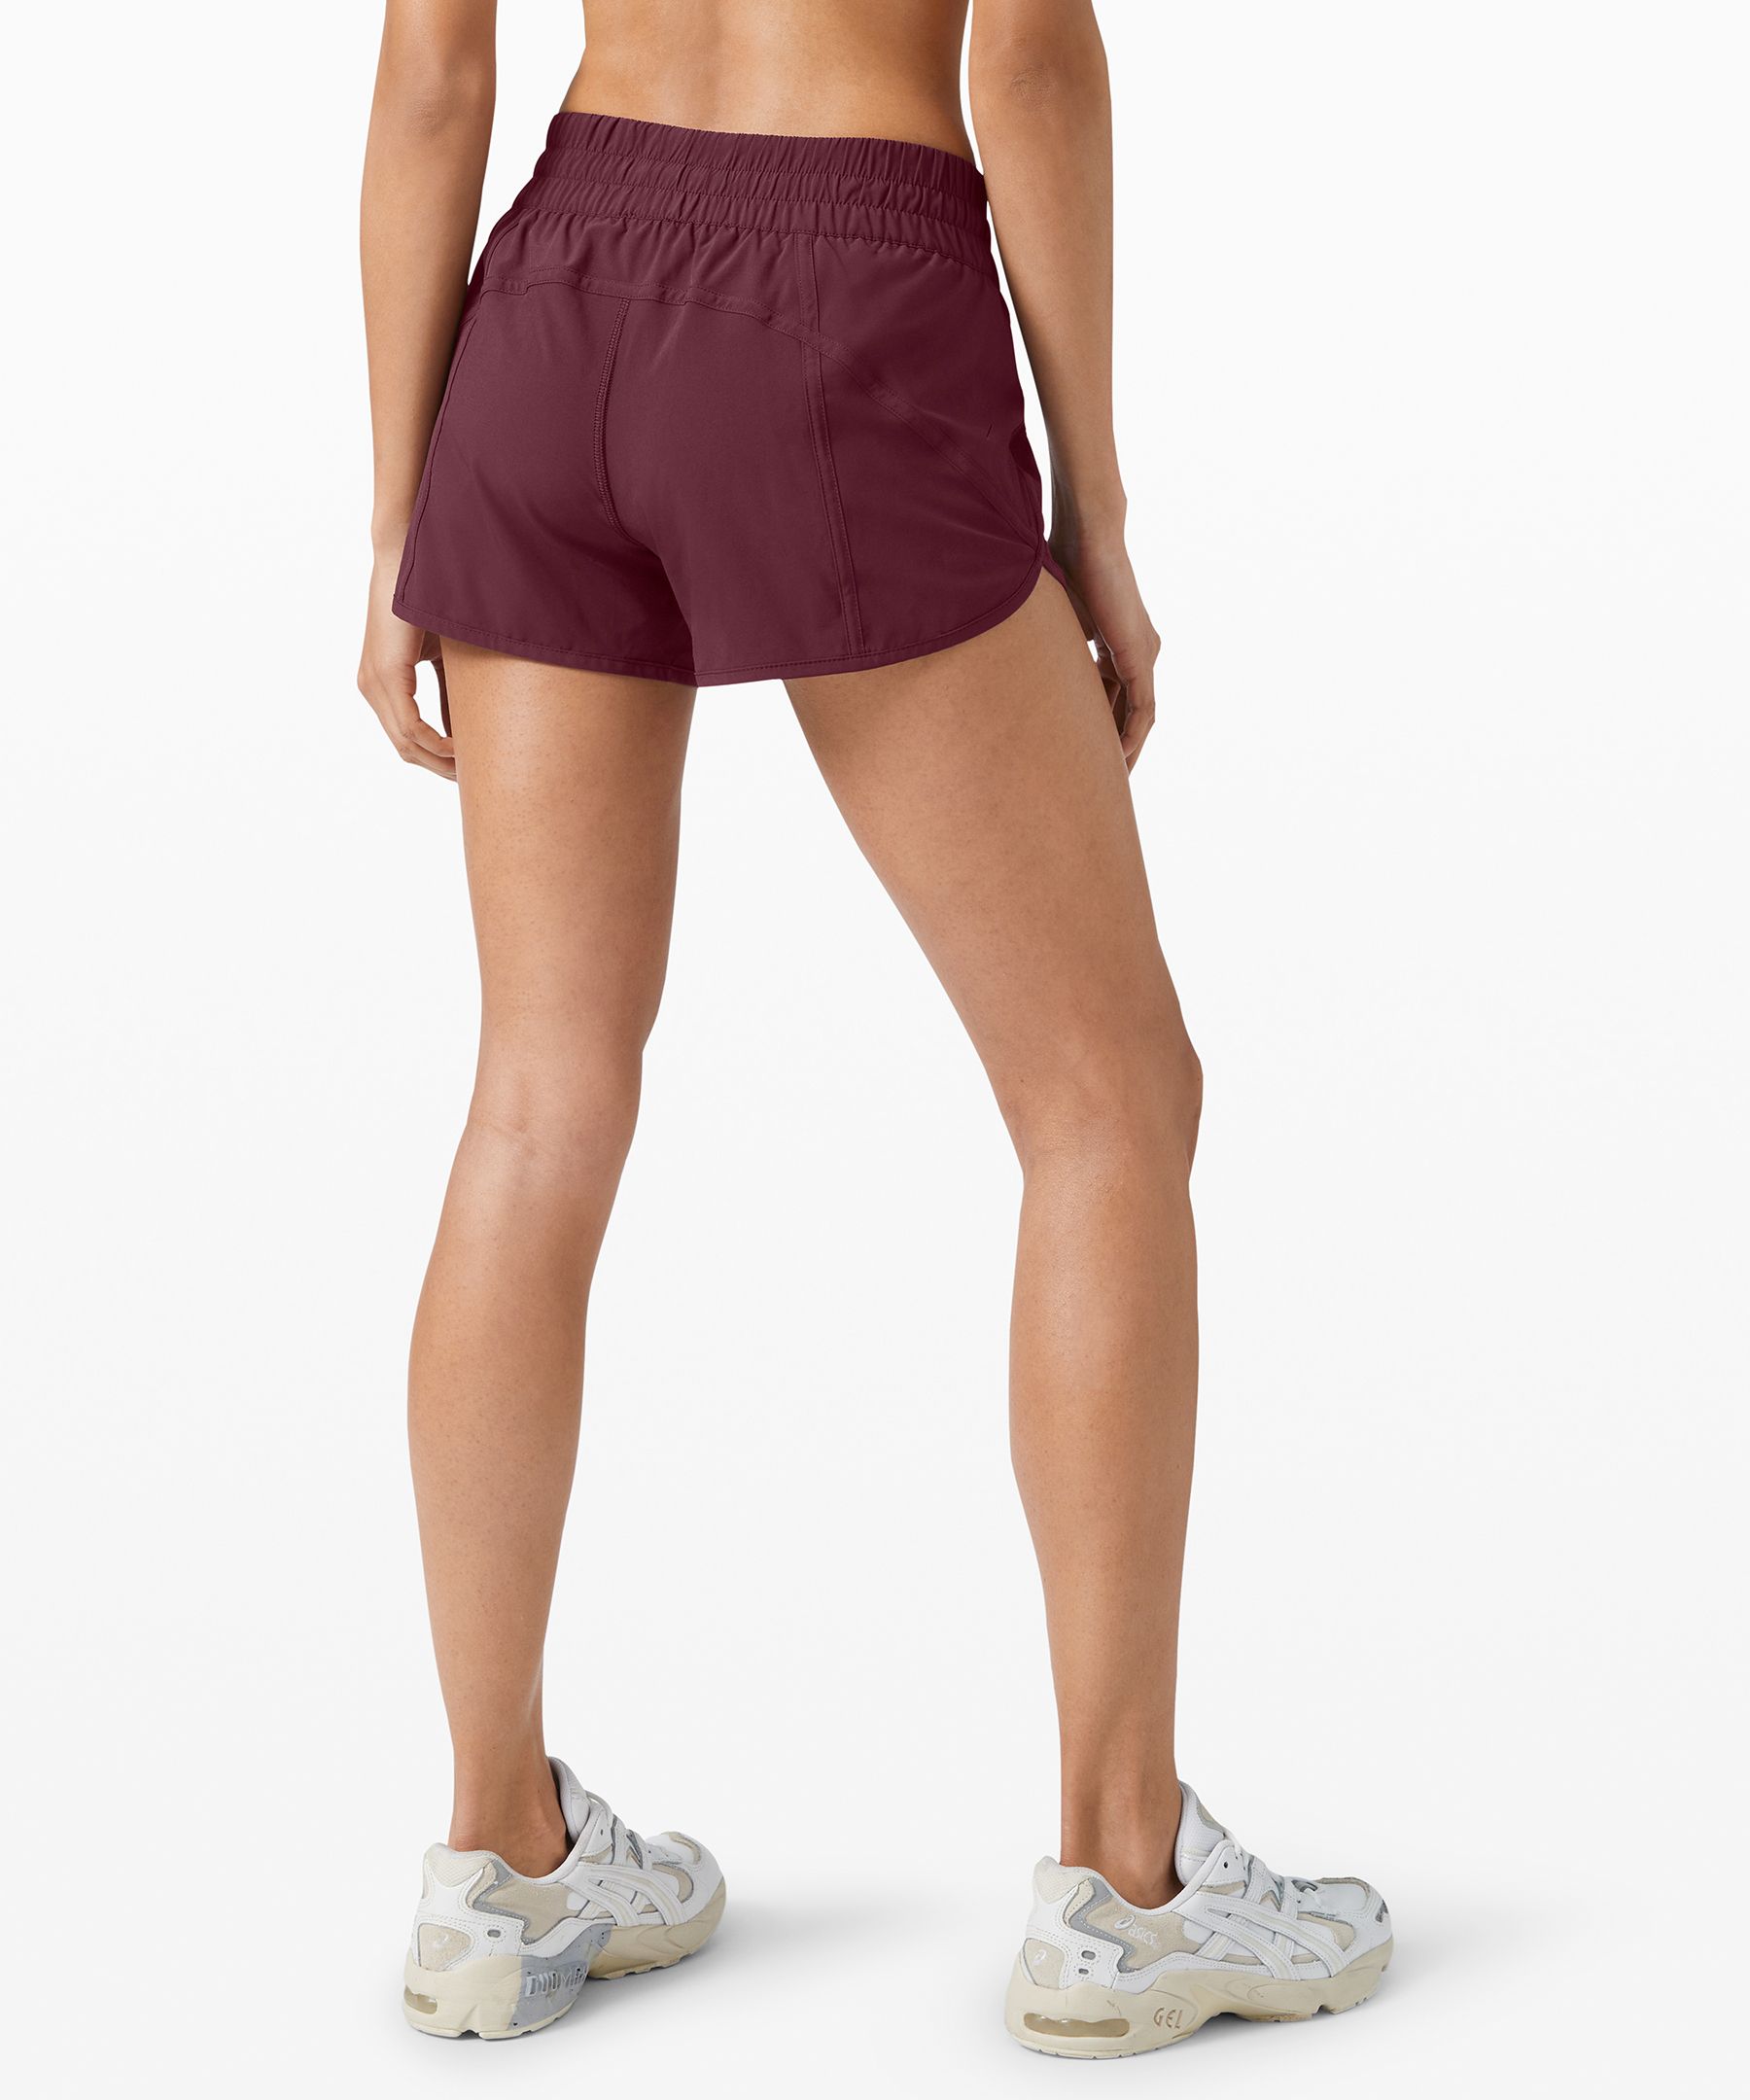 lululemon tracker shorts iv